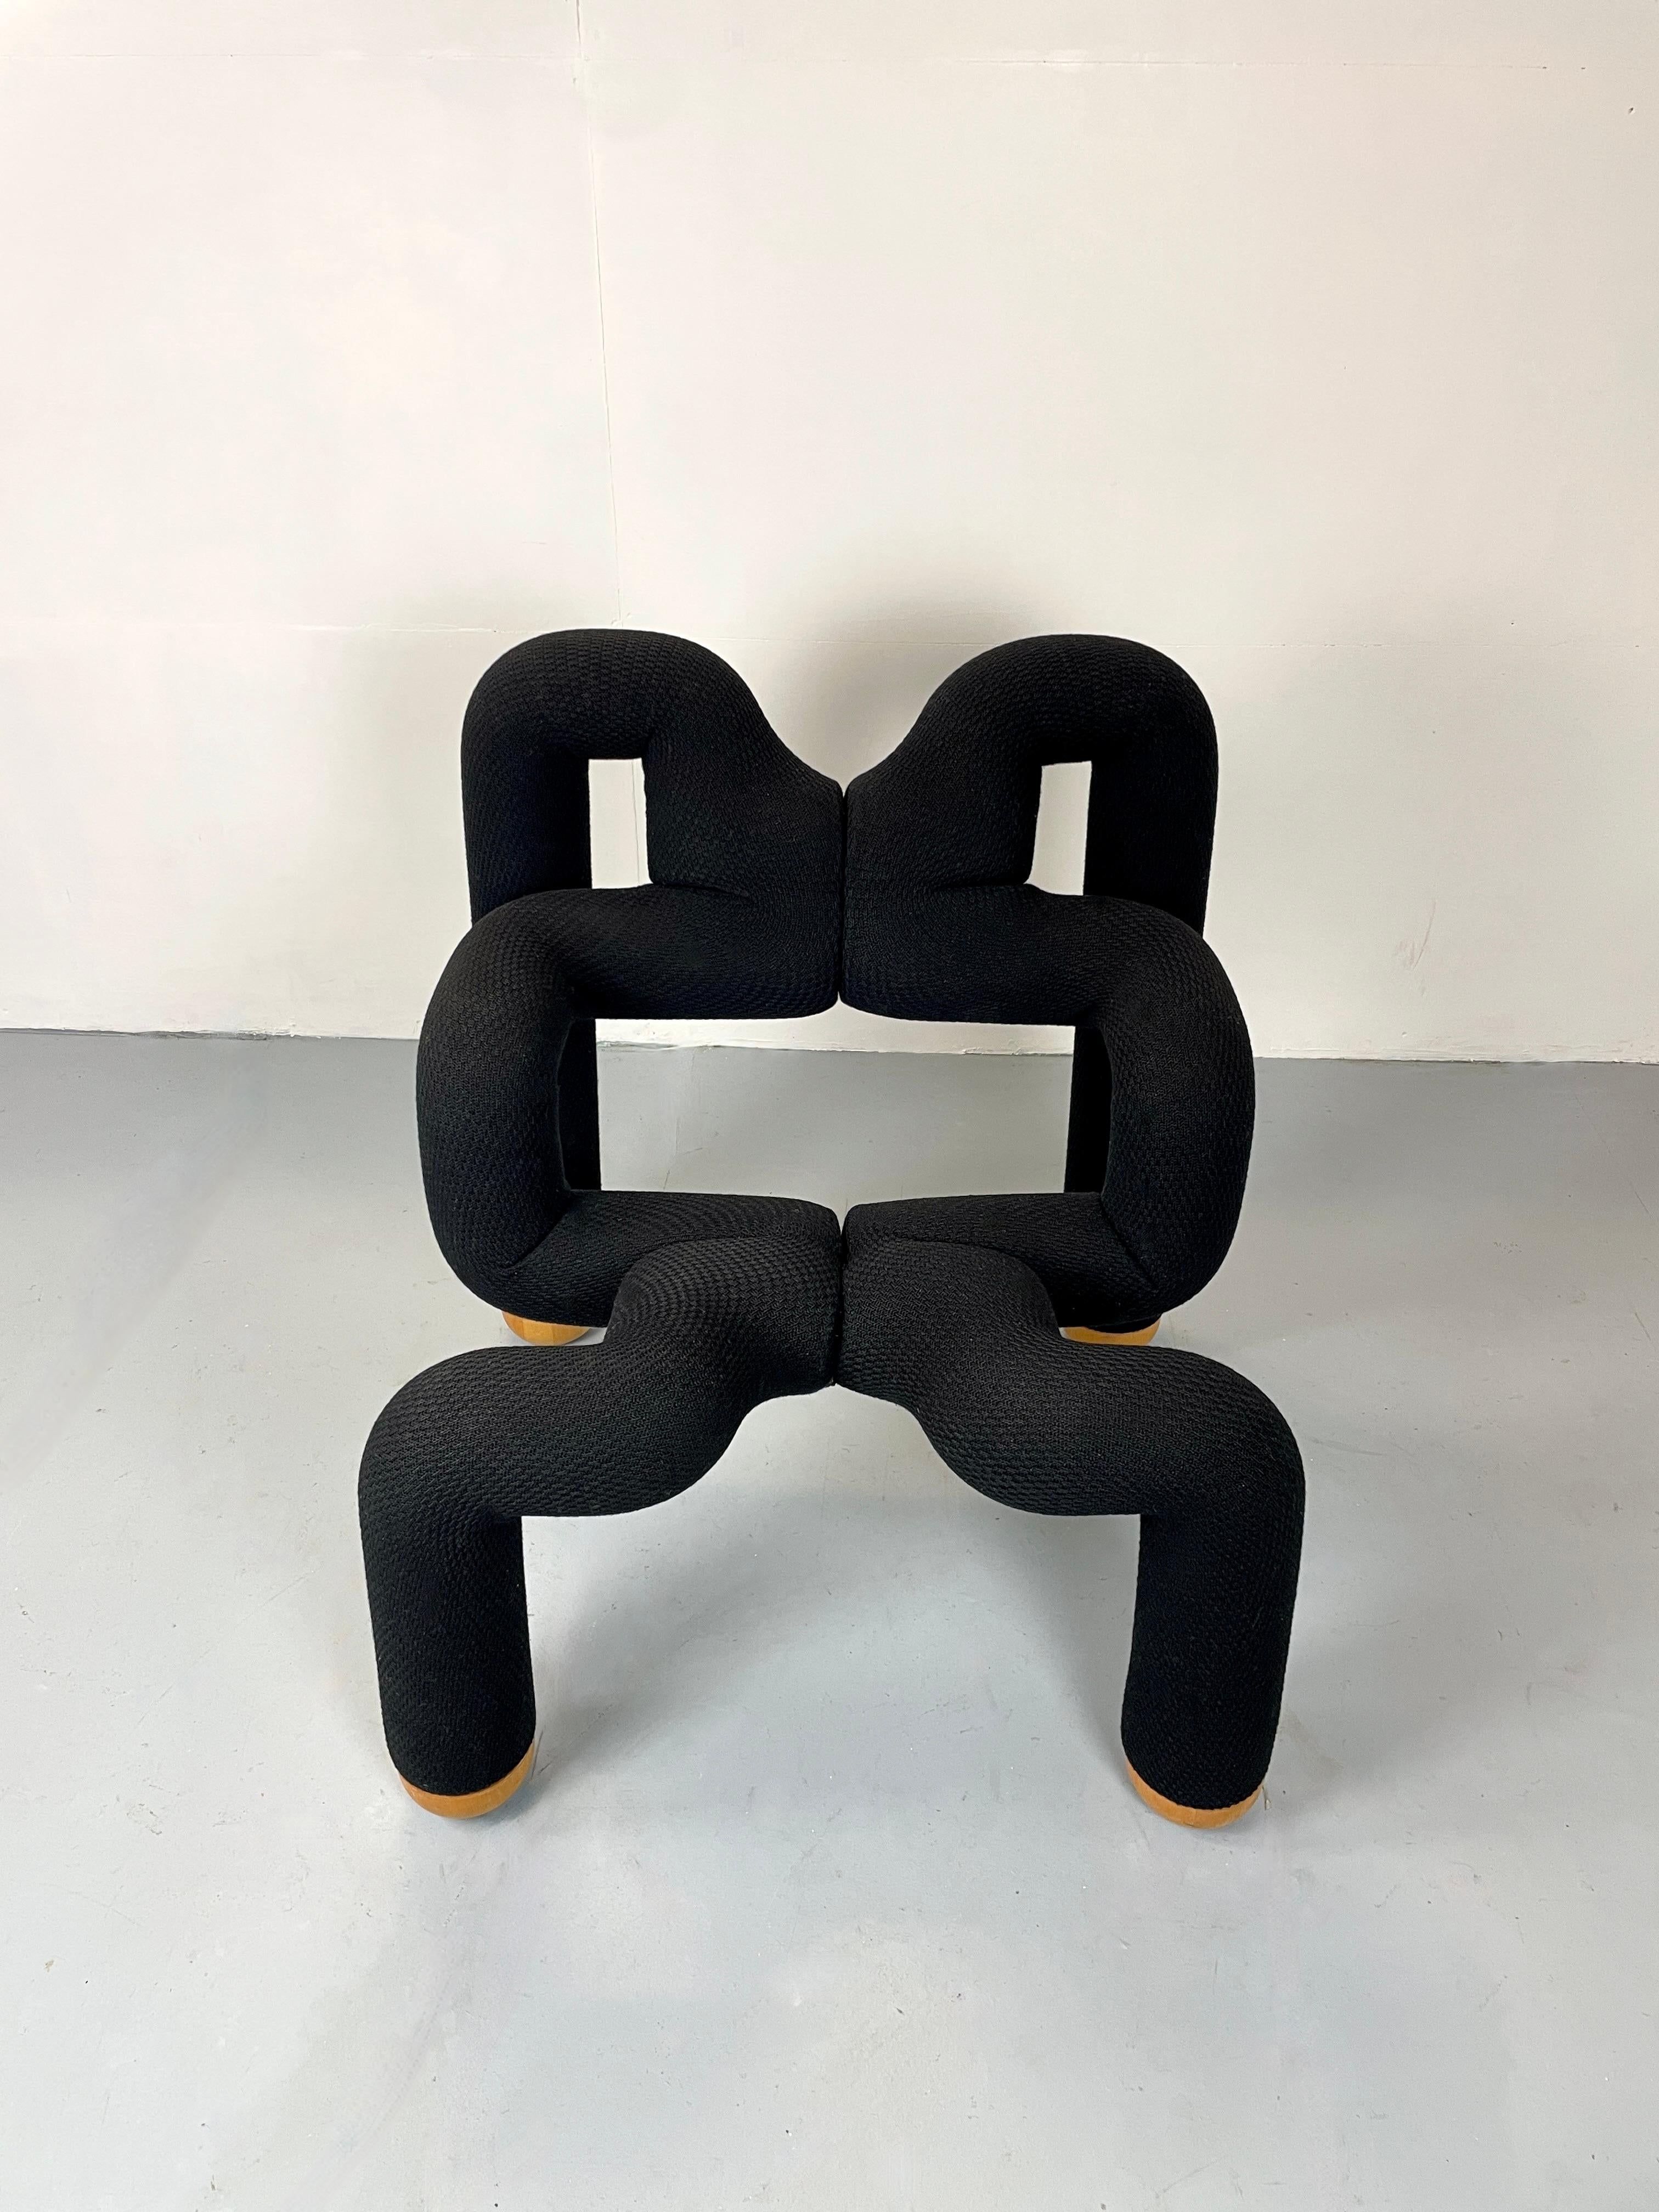 Chaise iconique Ekstrem de Terje Ekstrom, fabriquée à la main en Norvège. 
Très rare avec l'élévateur en bois pour la chaise.
La chaise est encore recouverte de son tissu d'origine. 

La couleur est noire.